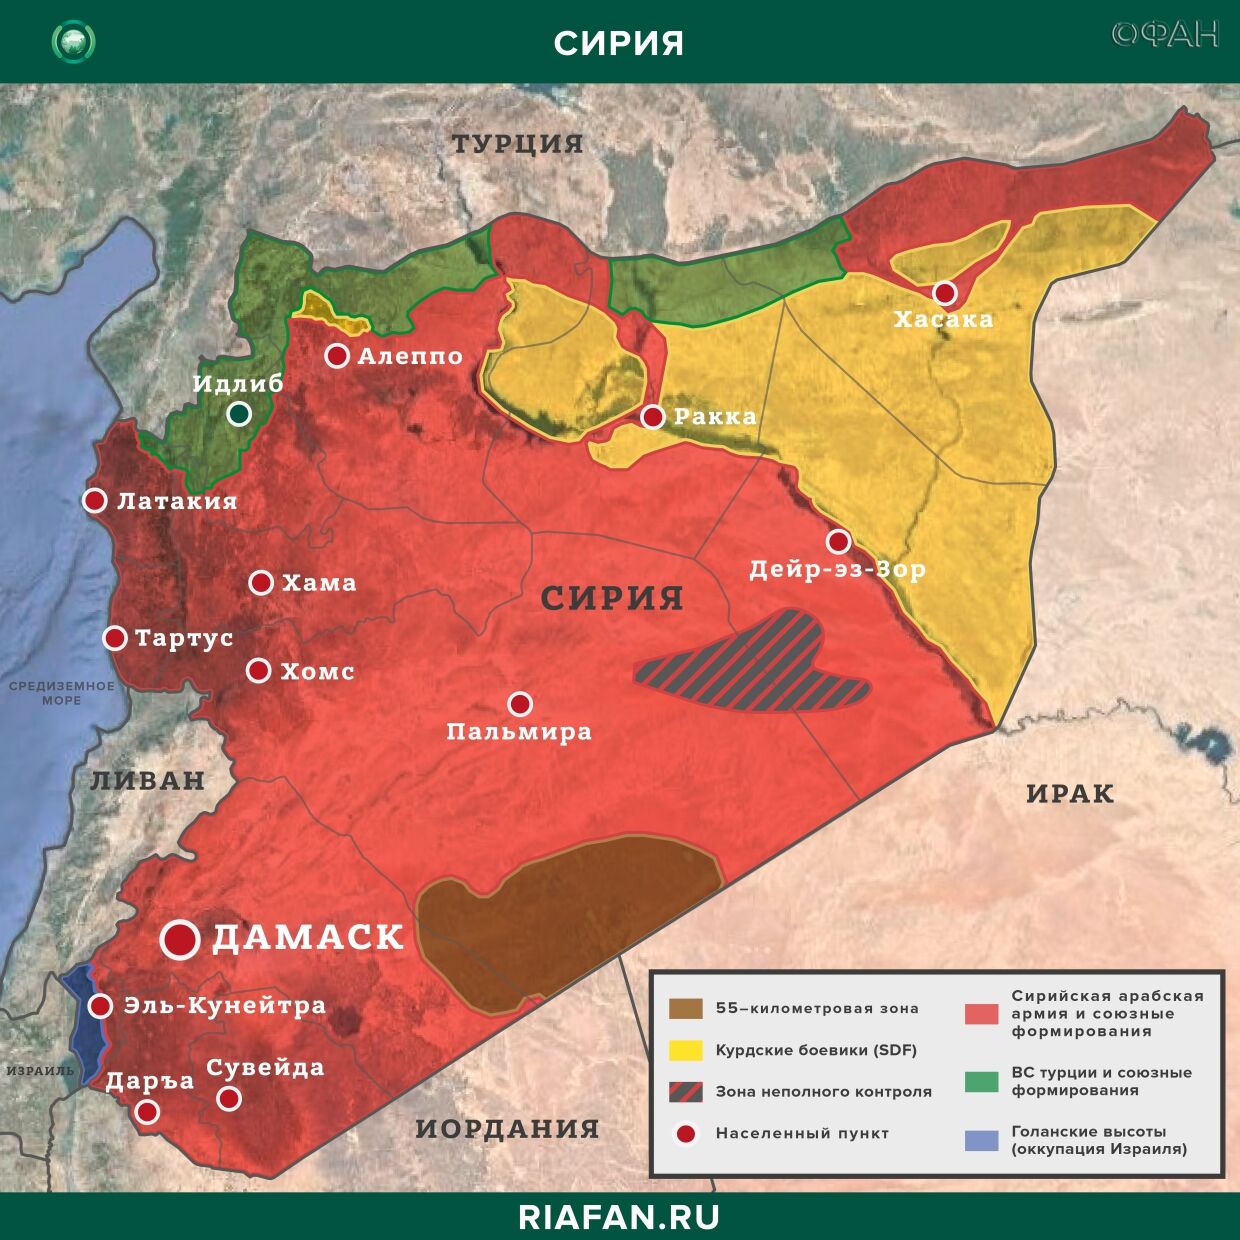 叙利亚新闻 19 可能 16.30: боевики ИГ* поджигают нефтяные скважины в Дейр-эз-Зоре, ВС Турции ударили по РПК в Ираке